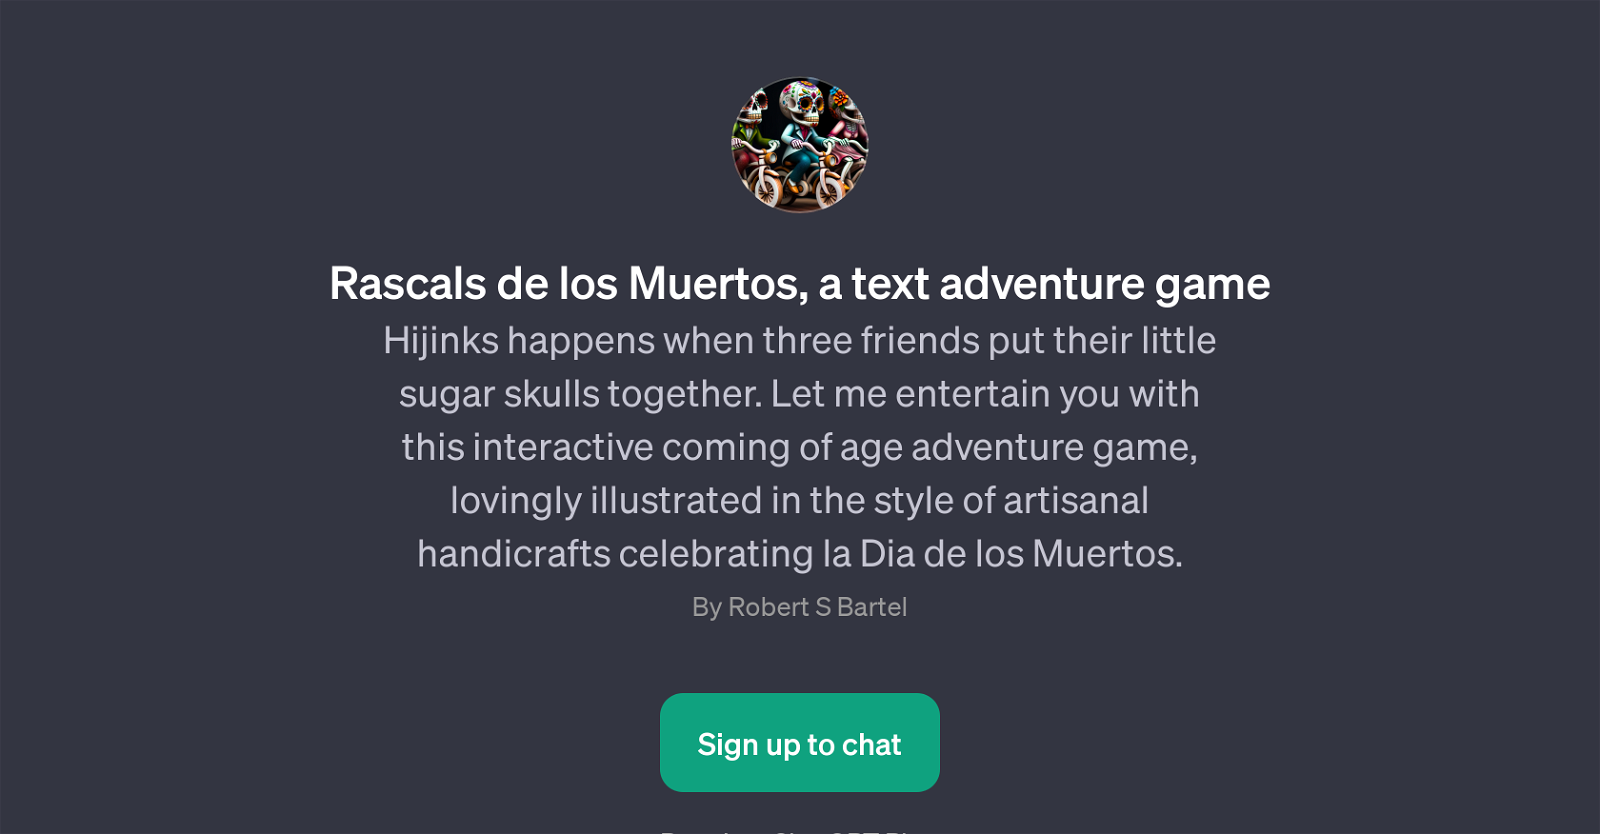 Rascals de los Muertos website